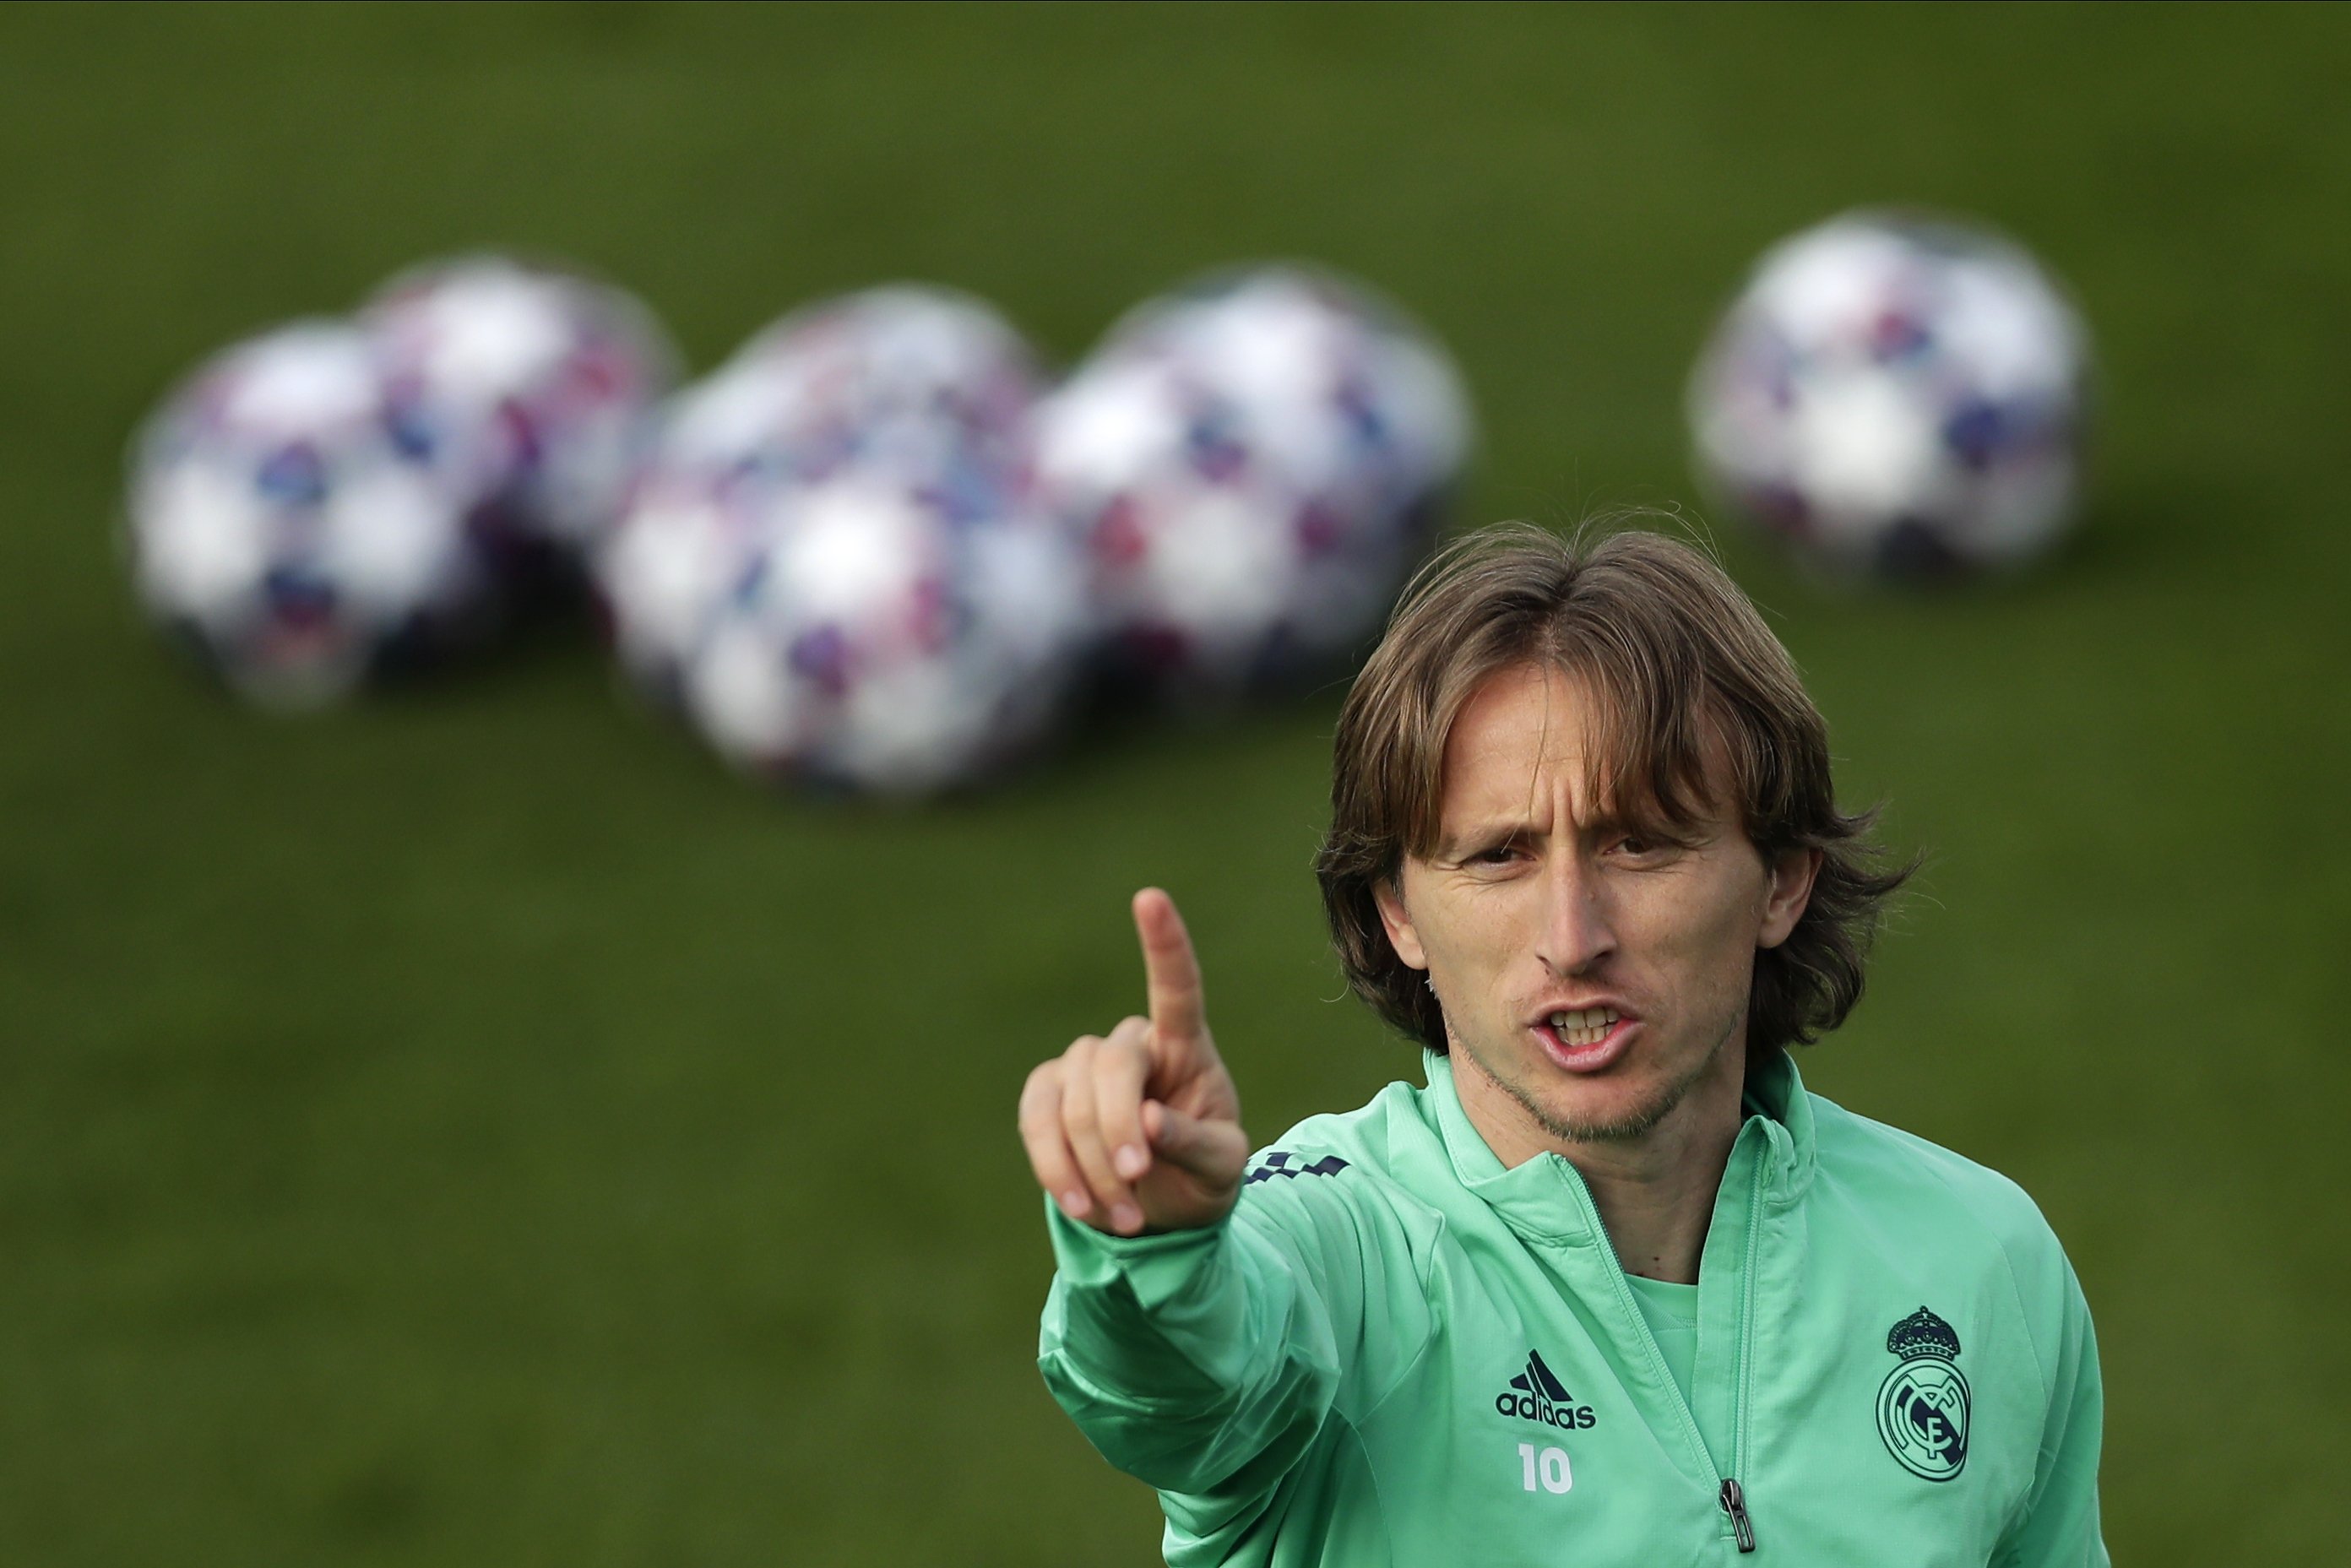 El relleu de Modric traeix el Reial Madrid i la negociació està cada cop més calenta